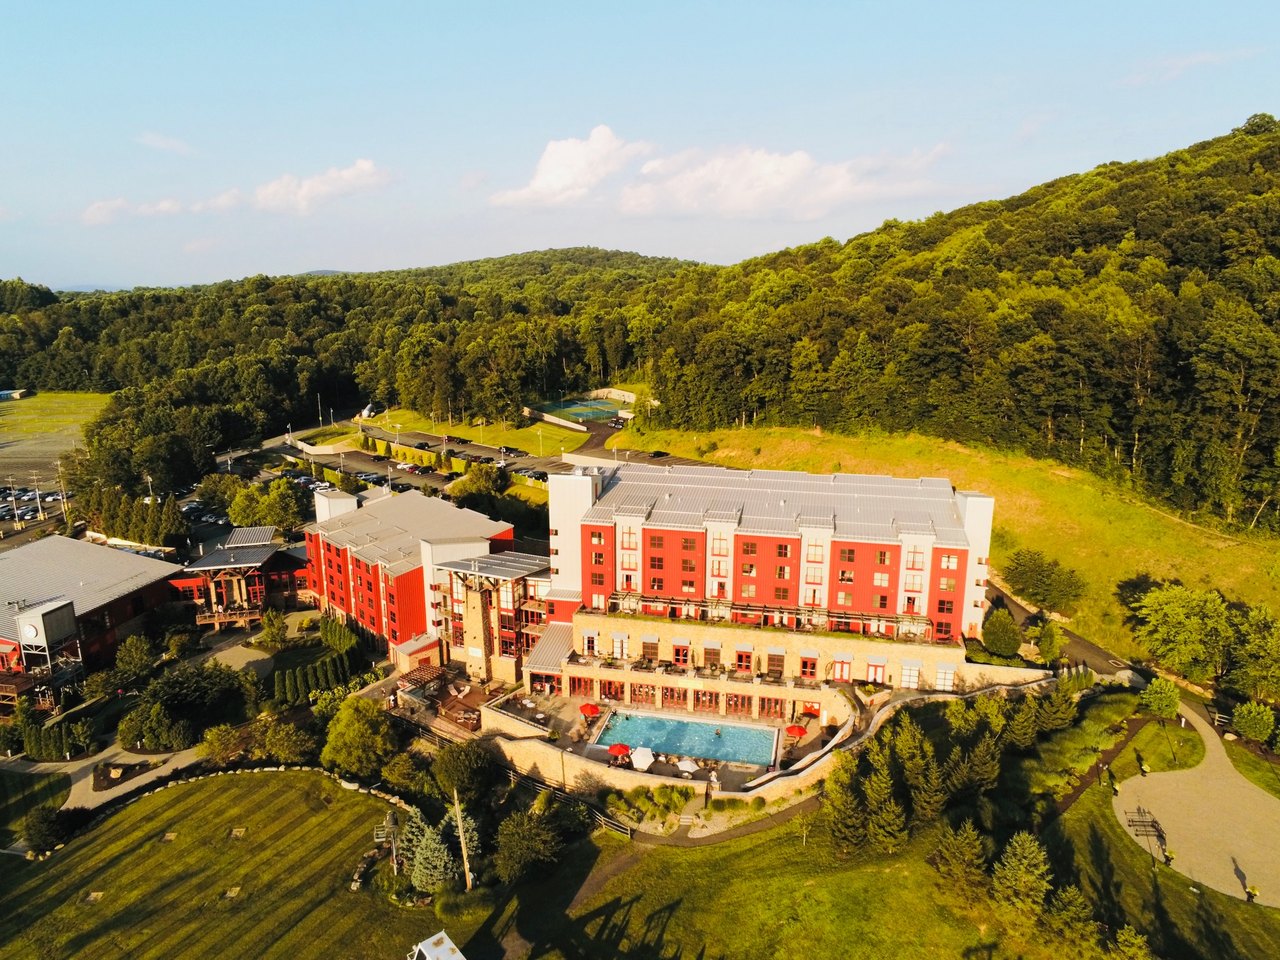 Visit This Beautiful Mountain Resort In Pennsylvania